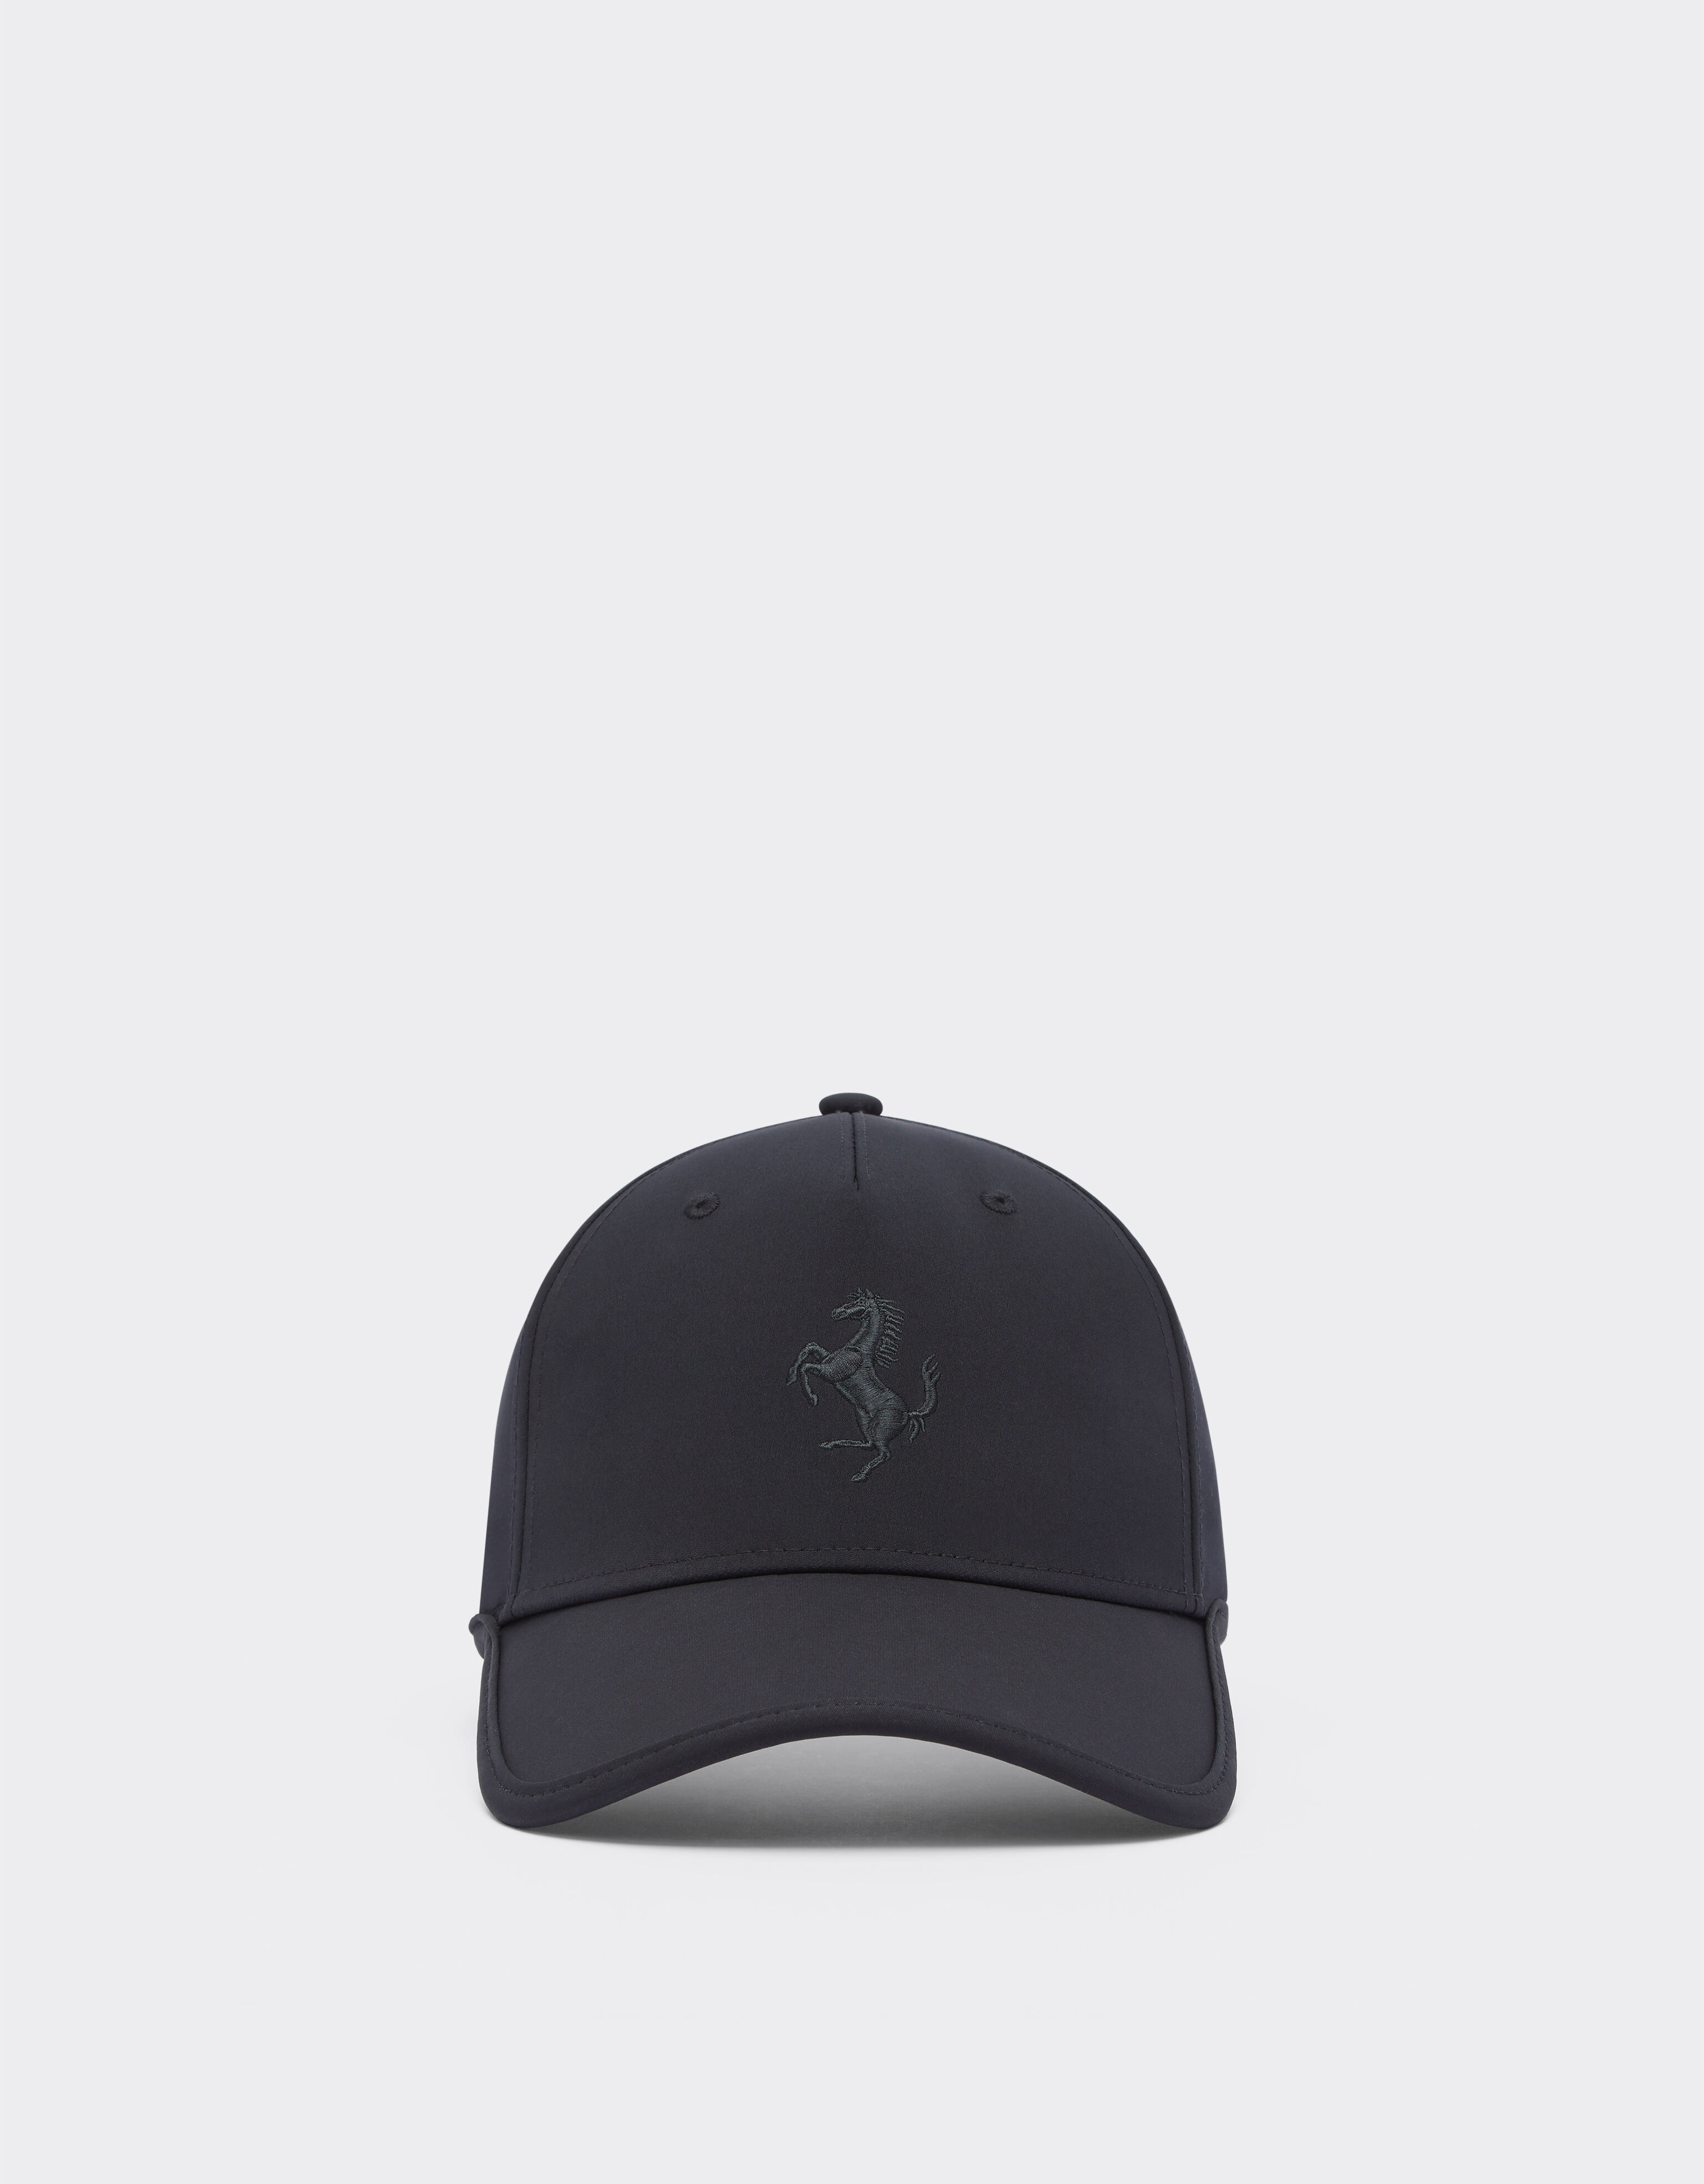 Ferrari Junior baseball hat with Prancing Horse detail Dark Grey 21429f